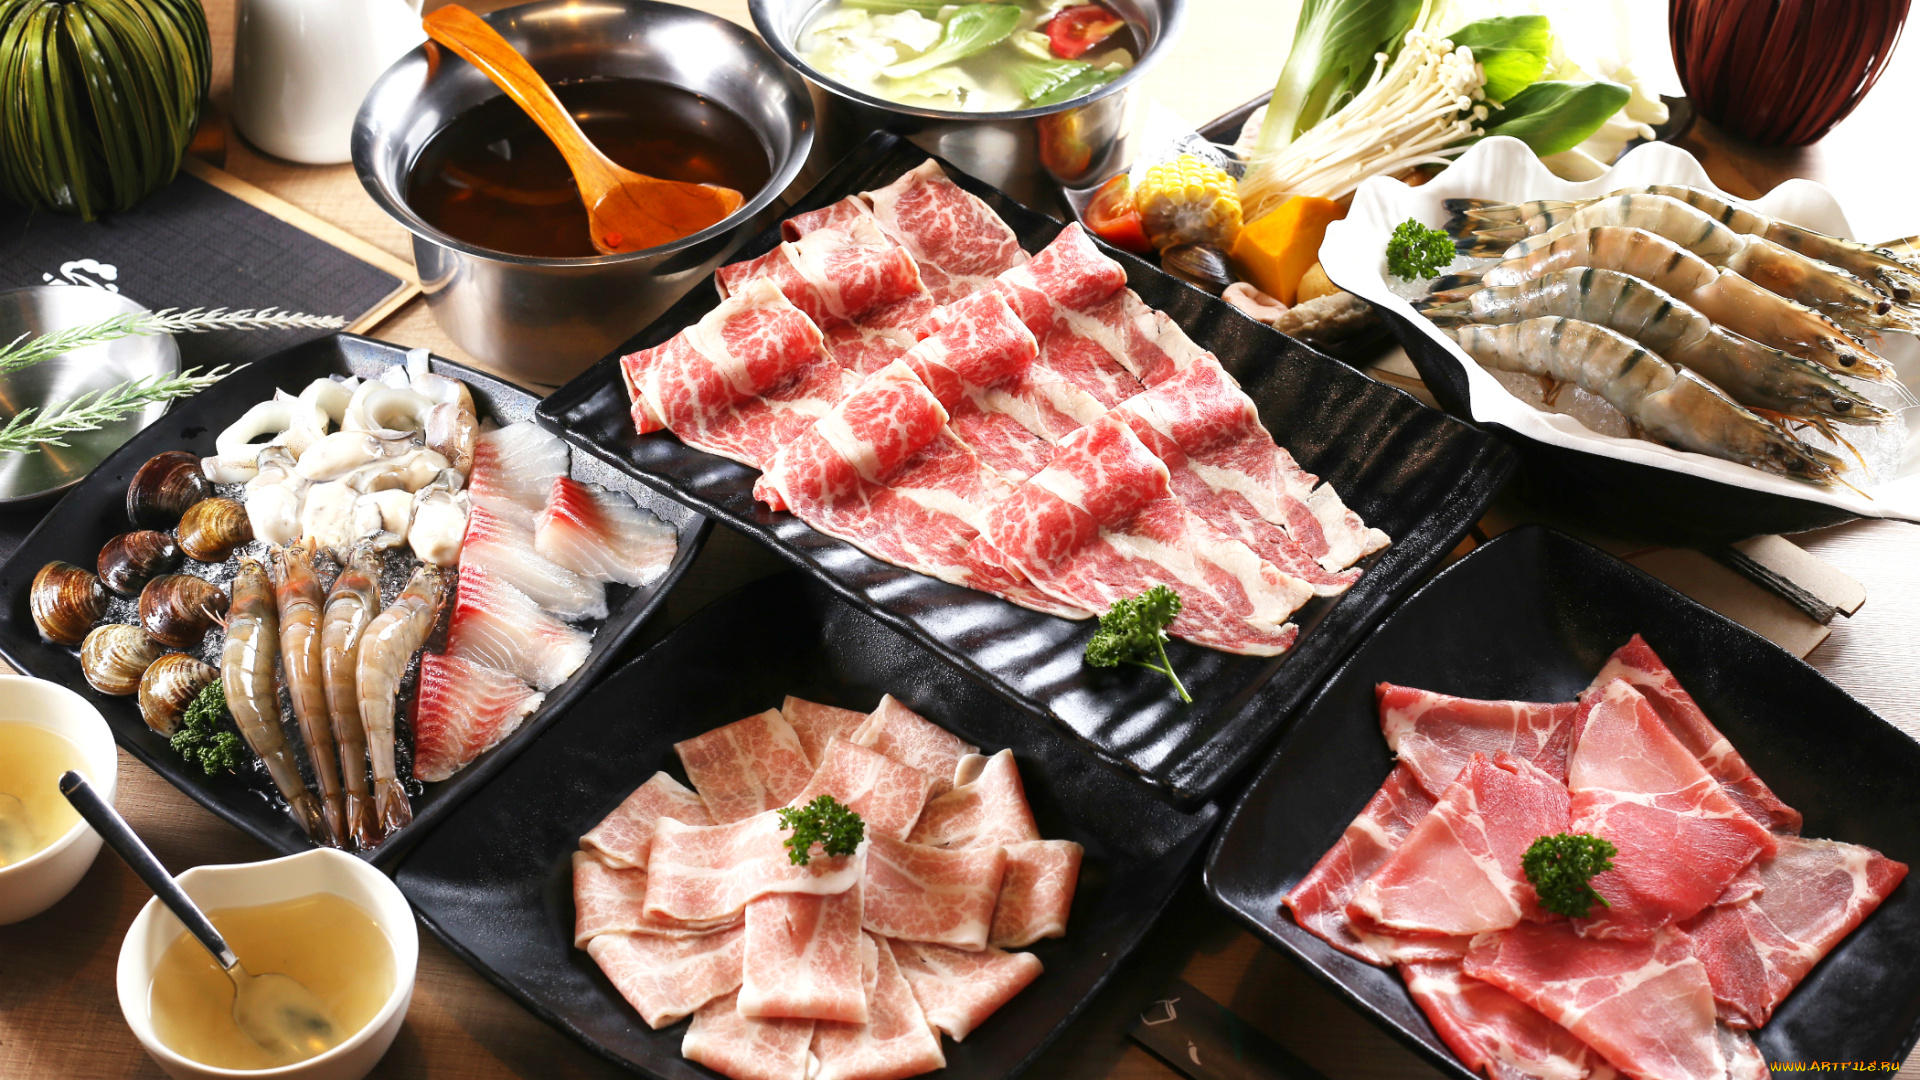 еда, разное, японская, кухня, морепродукты, ассорти, блюда, мясо, суп, моллюски, креветки, соус